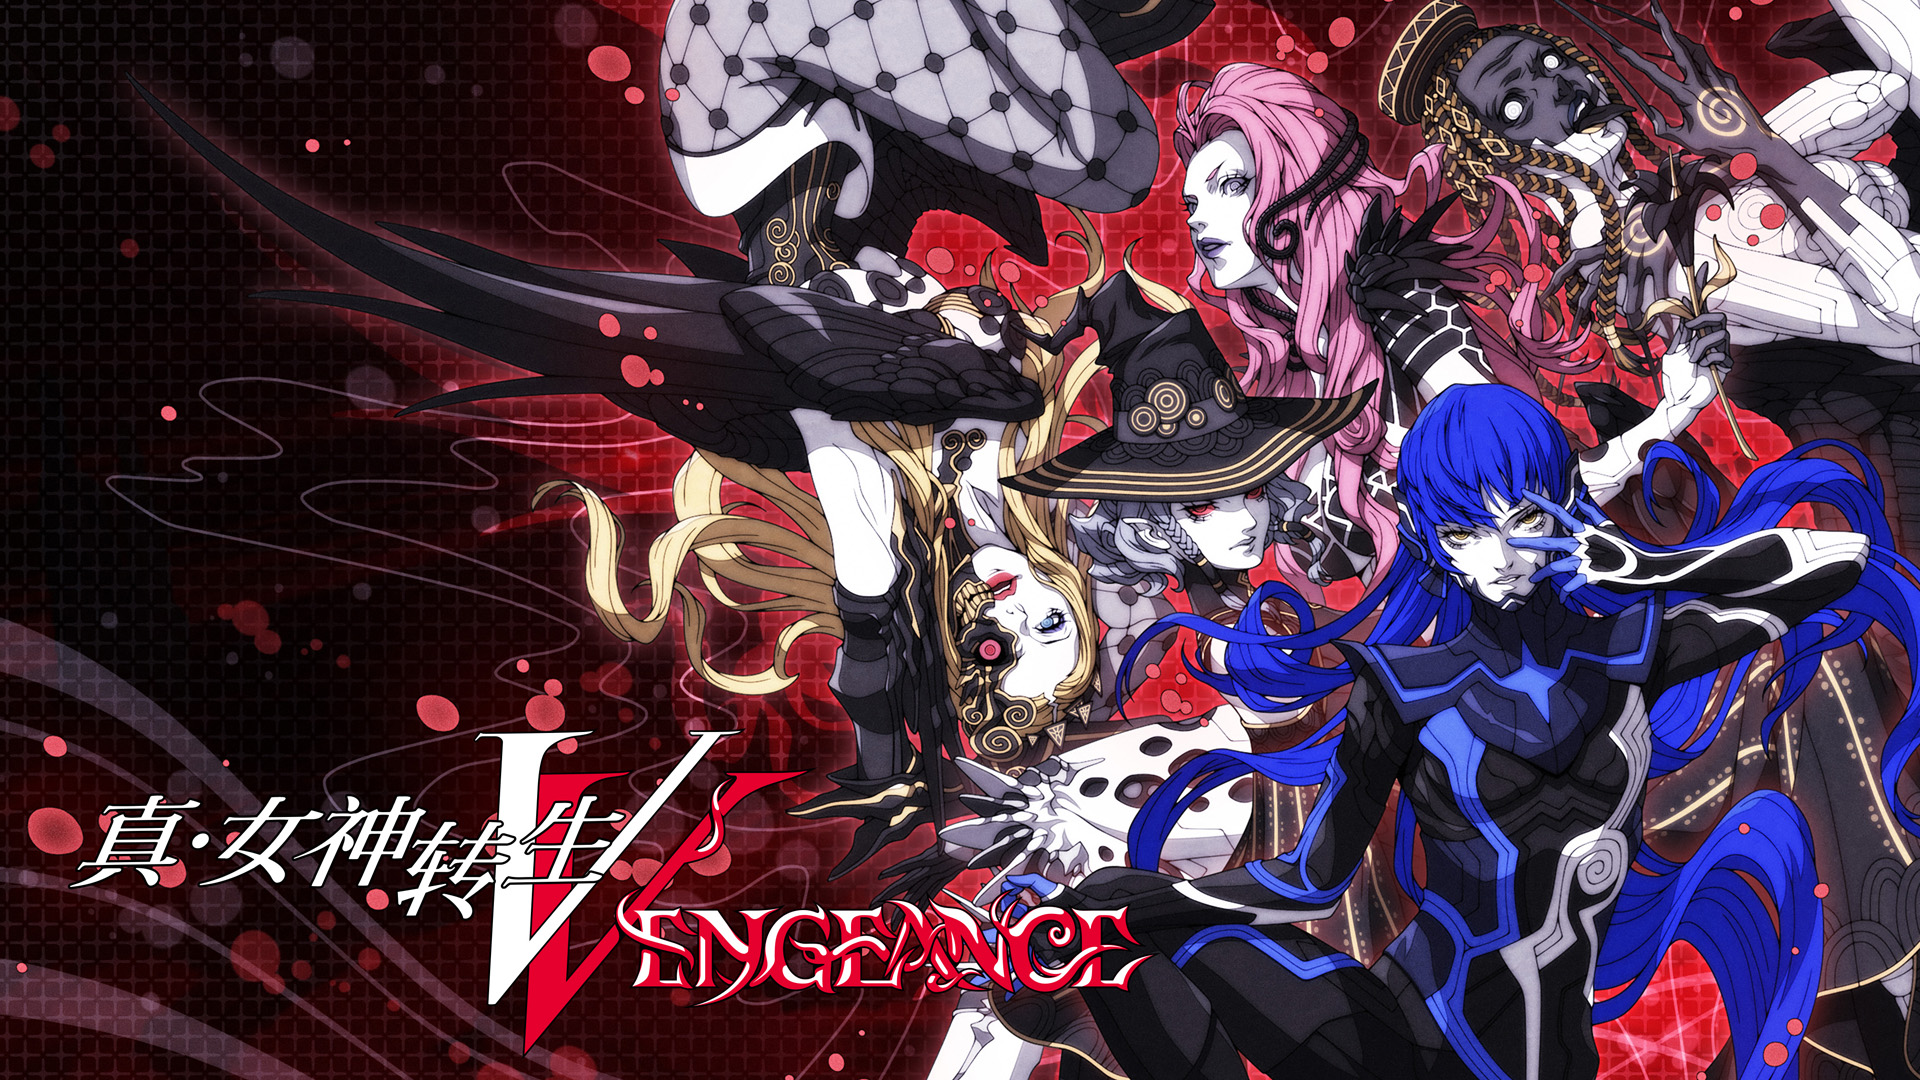 《真·女神转生Ⅴ Vengeance》介绍新舞台“达识：新宿区”、恶魔合体等游玩要素